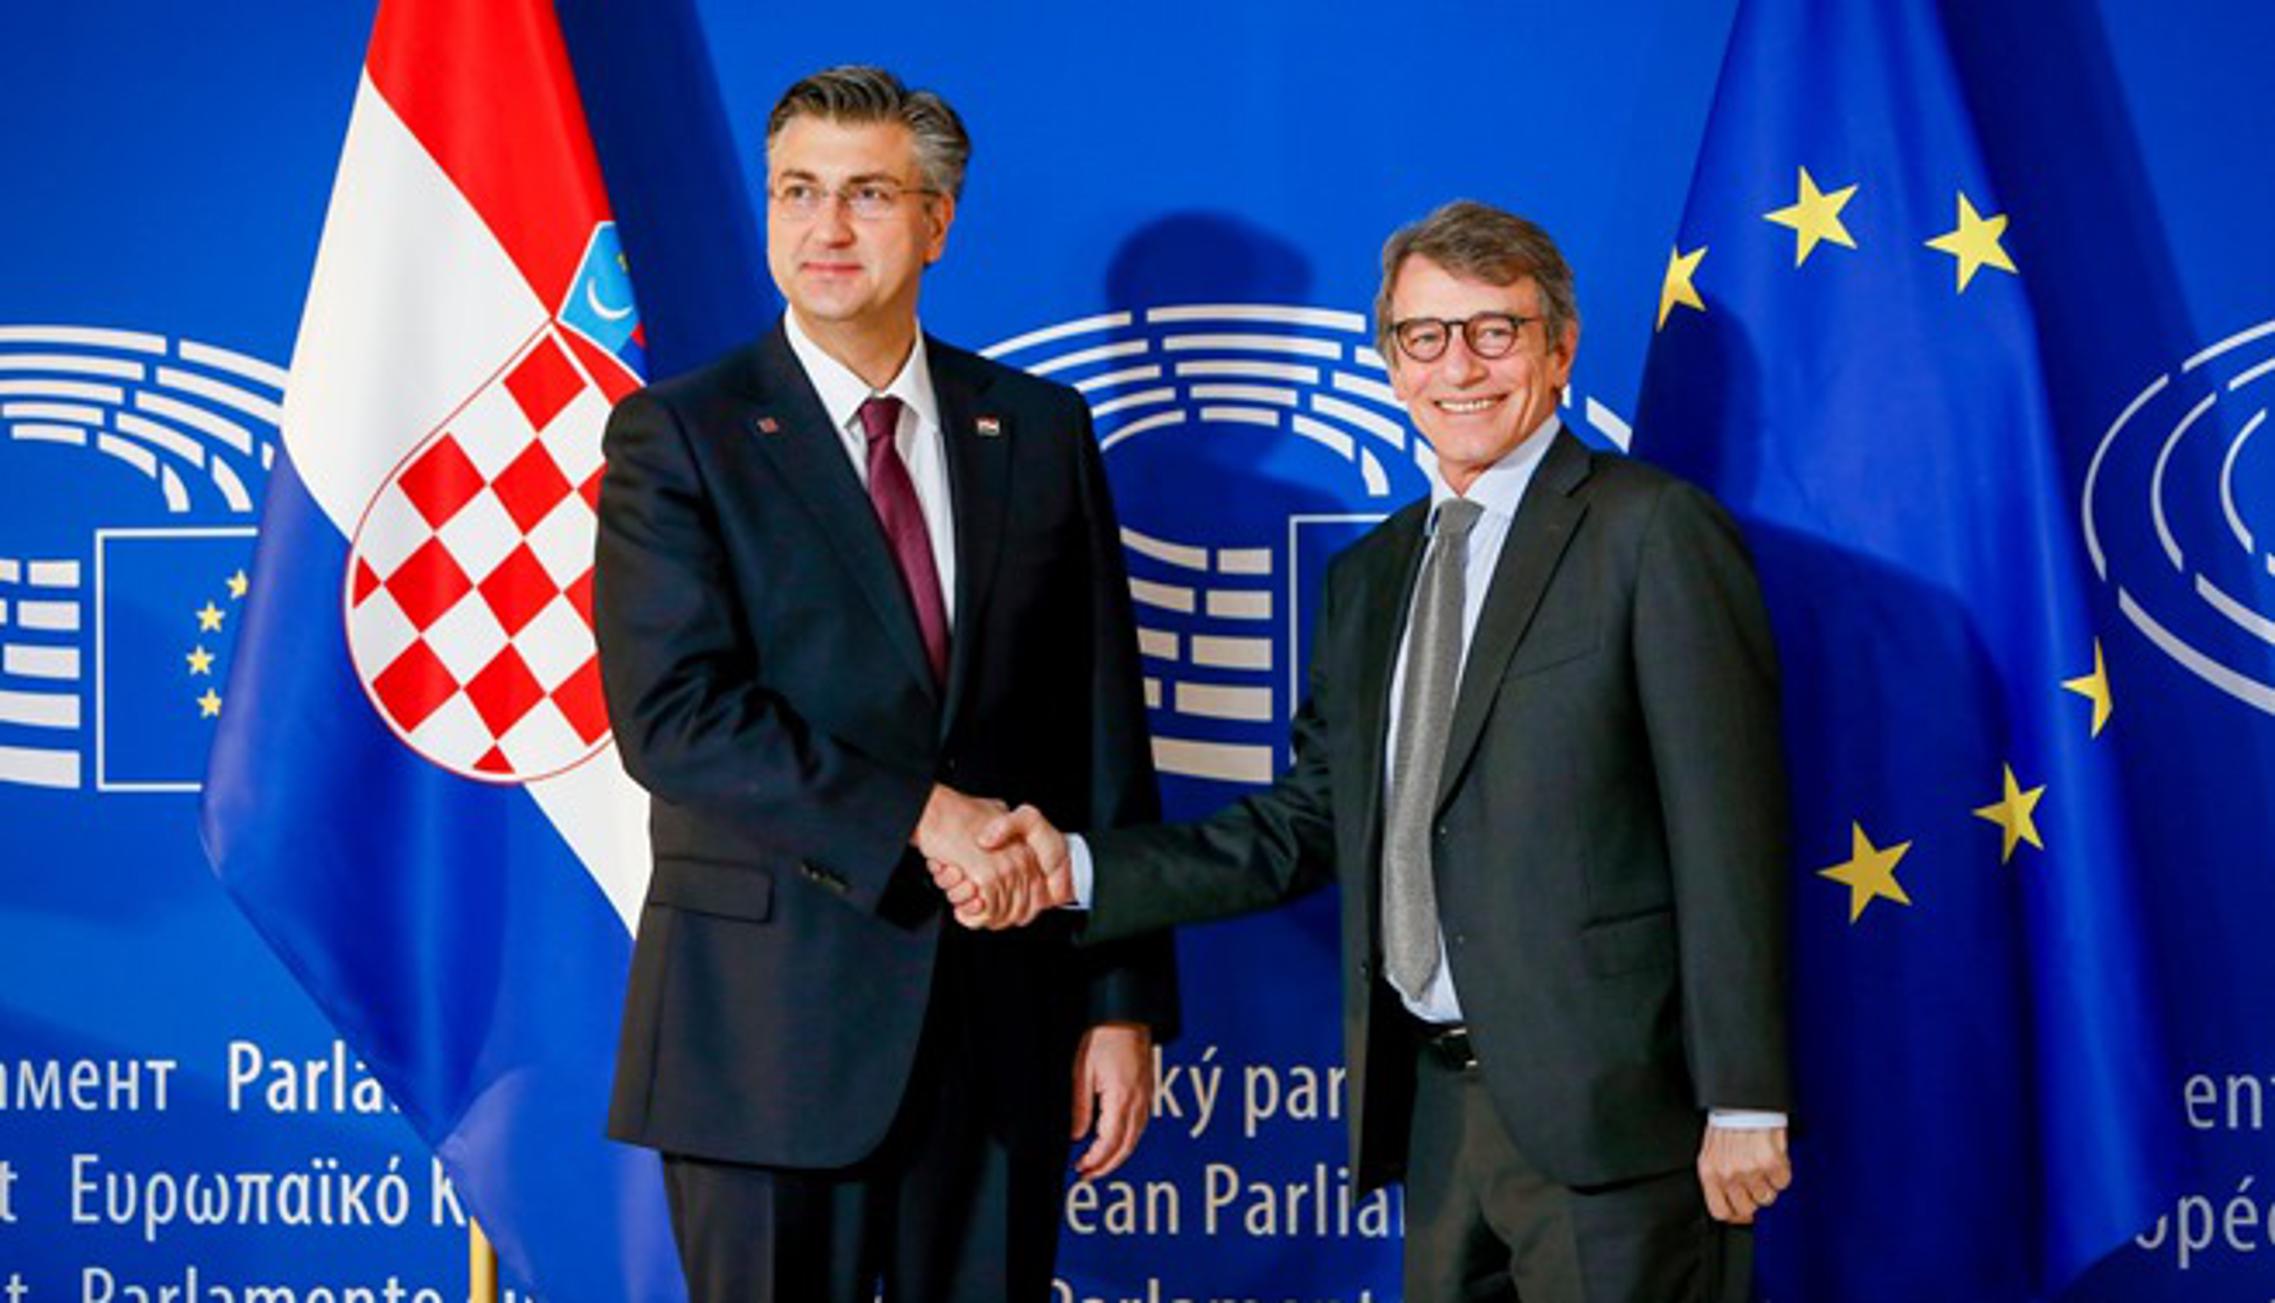 Predsjednik Vlade RH, Andrej Plenković s predsjednikom Europskog parlamenta, Davidom Sassolijem